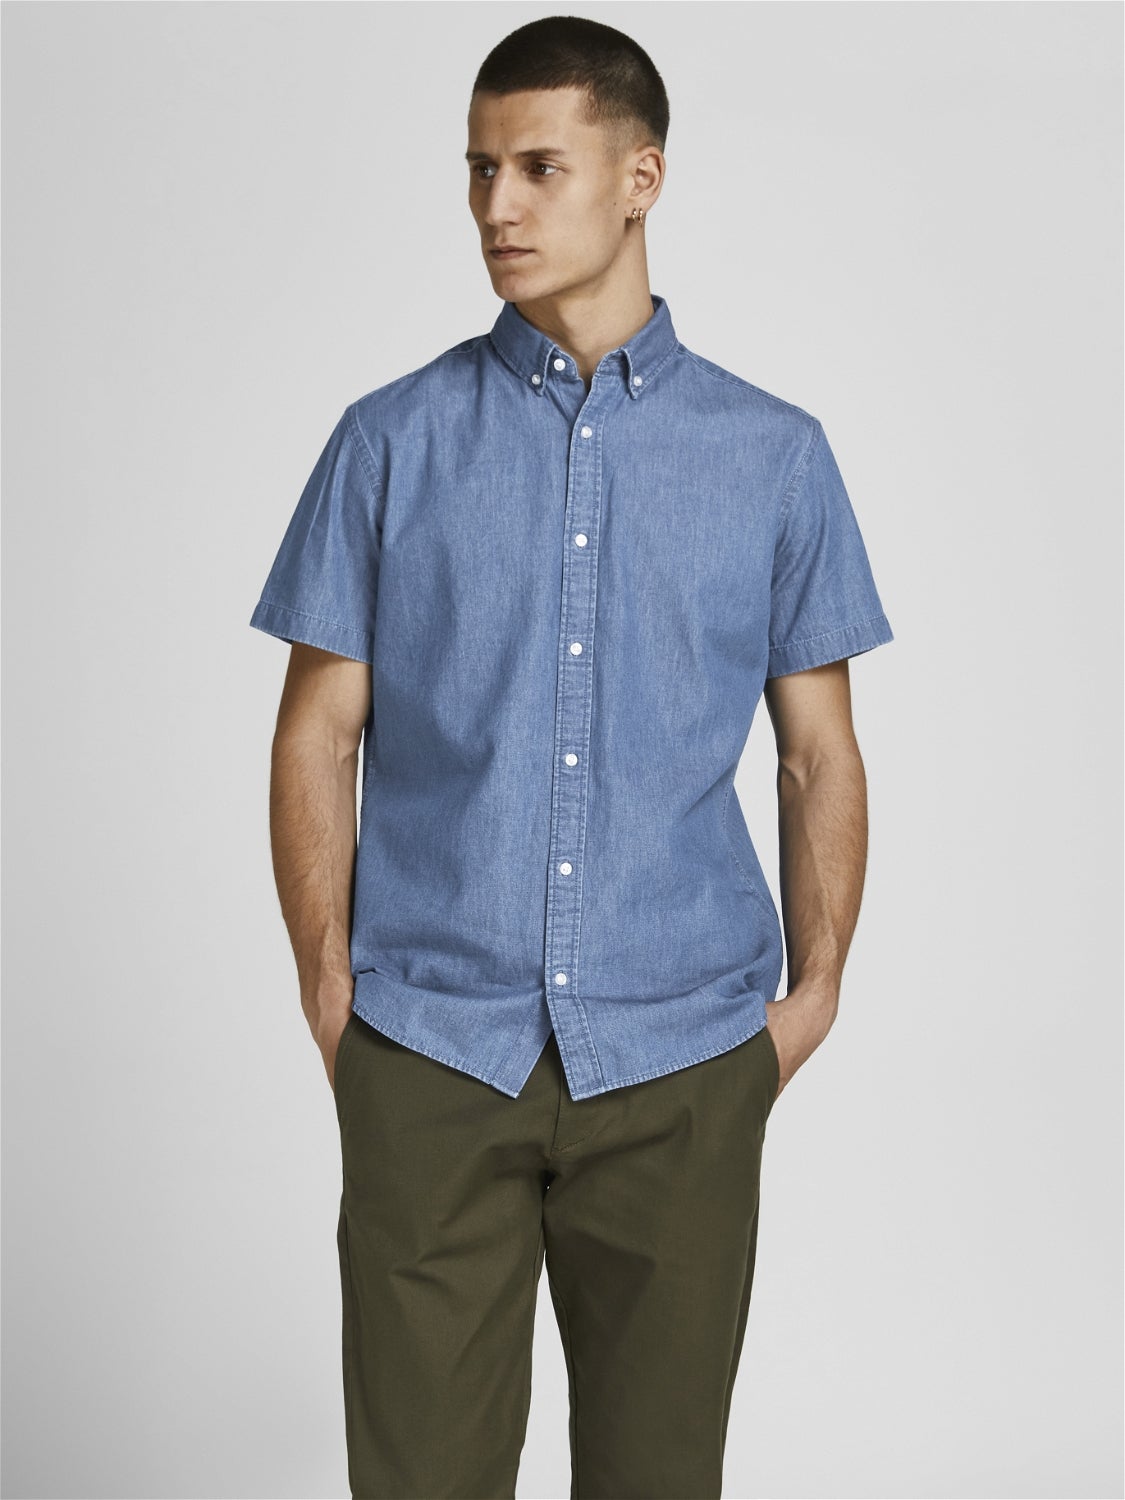 Jack & Jones Hemd Blau S HERREN Hemden & T-Shirts Print Rabatt 58 % 